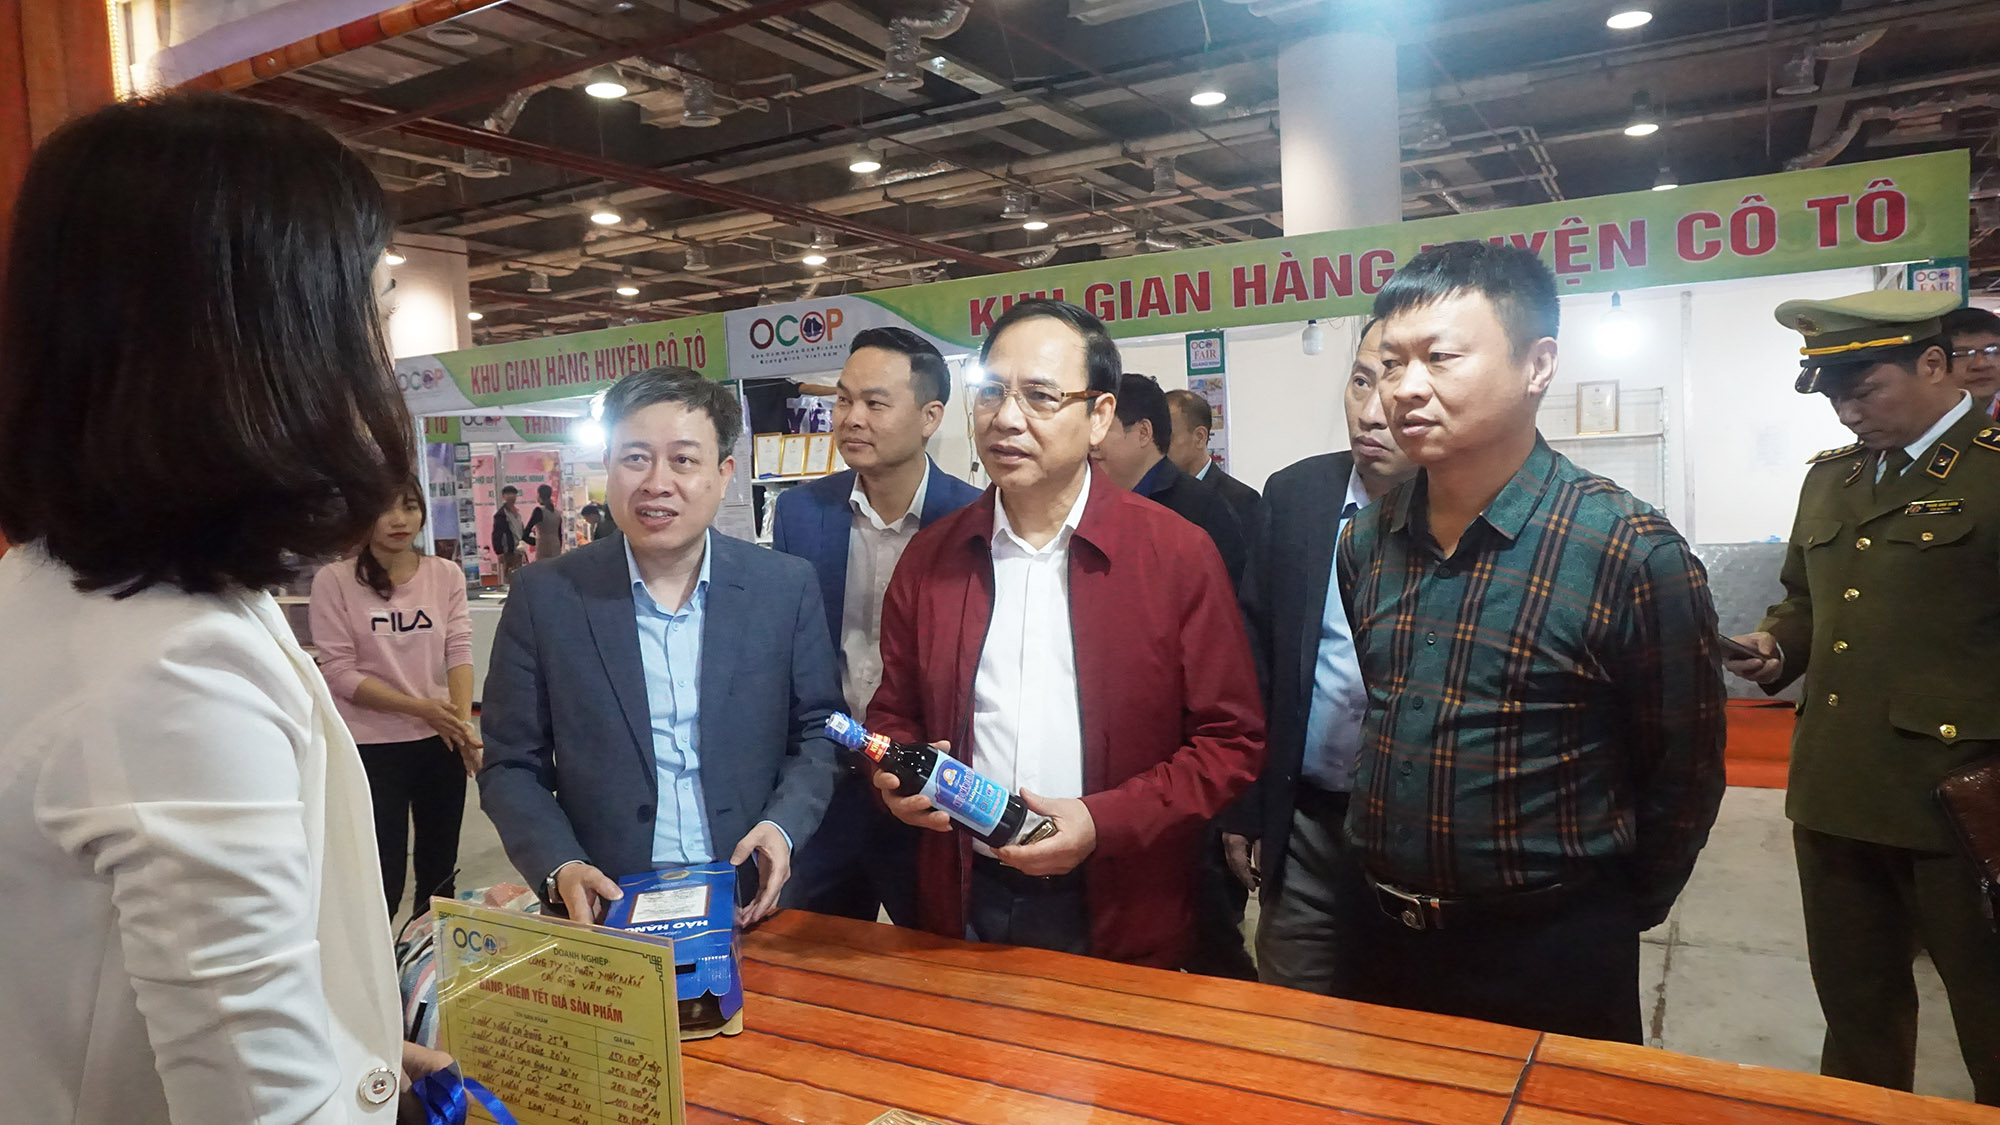 Đồng chí Đặng Huy Hậu, Phó Chủ tịch Thường trực UBND tỉnh kiểm tra chất lượng một số sản phẩm của các đơn vị tham gia Hội chợ.